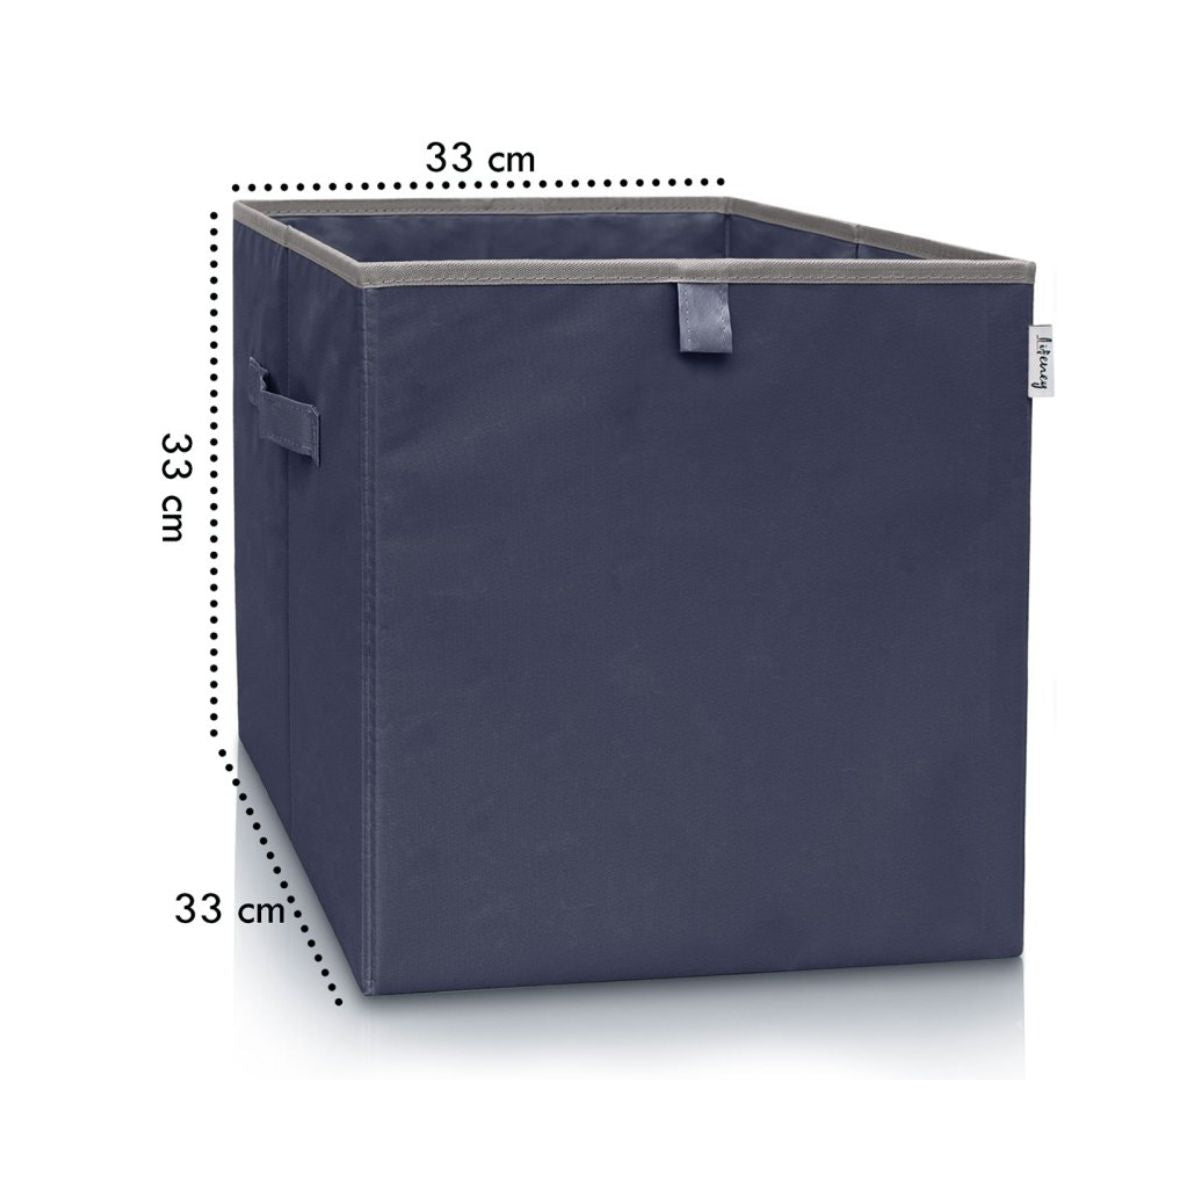 Boîte de rangement coloris bleu foncé, compatible avec l'étagère IKEA KALLAX Lifeney